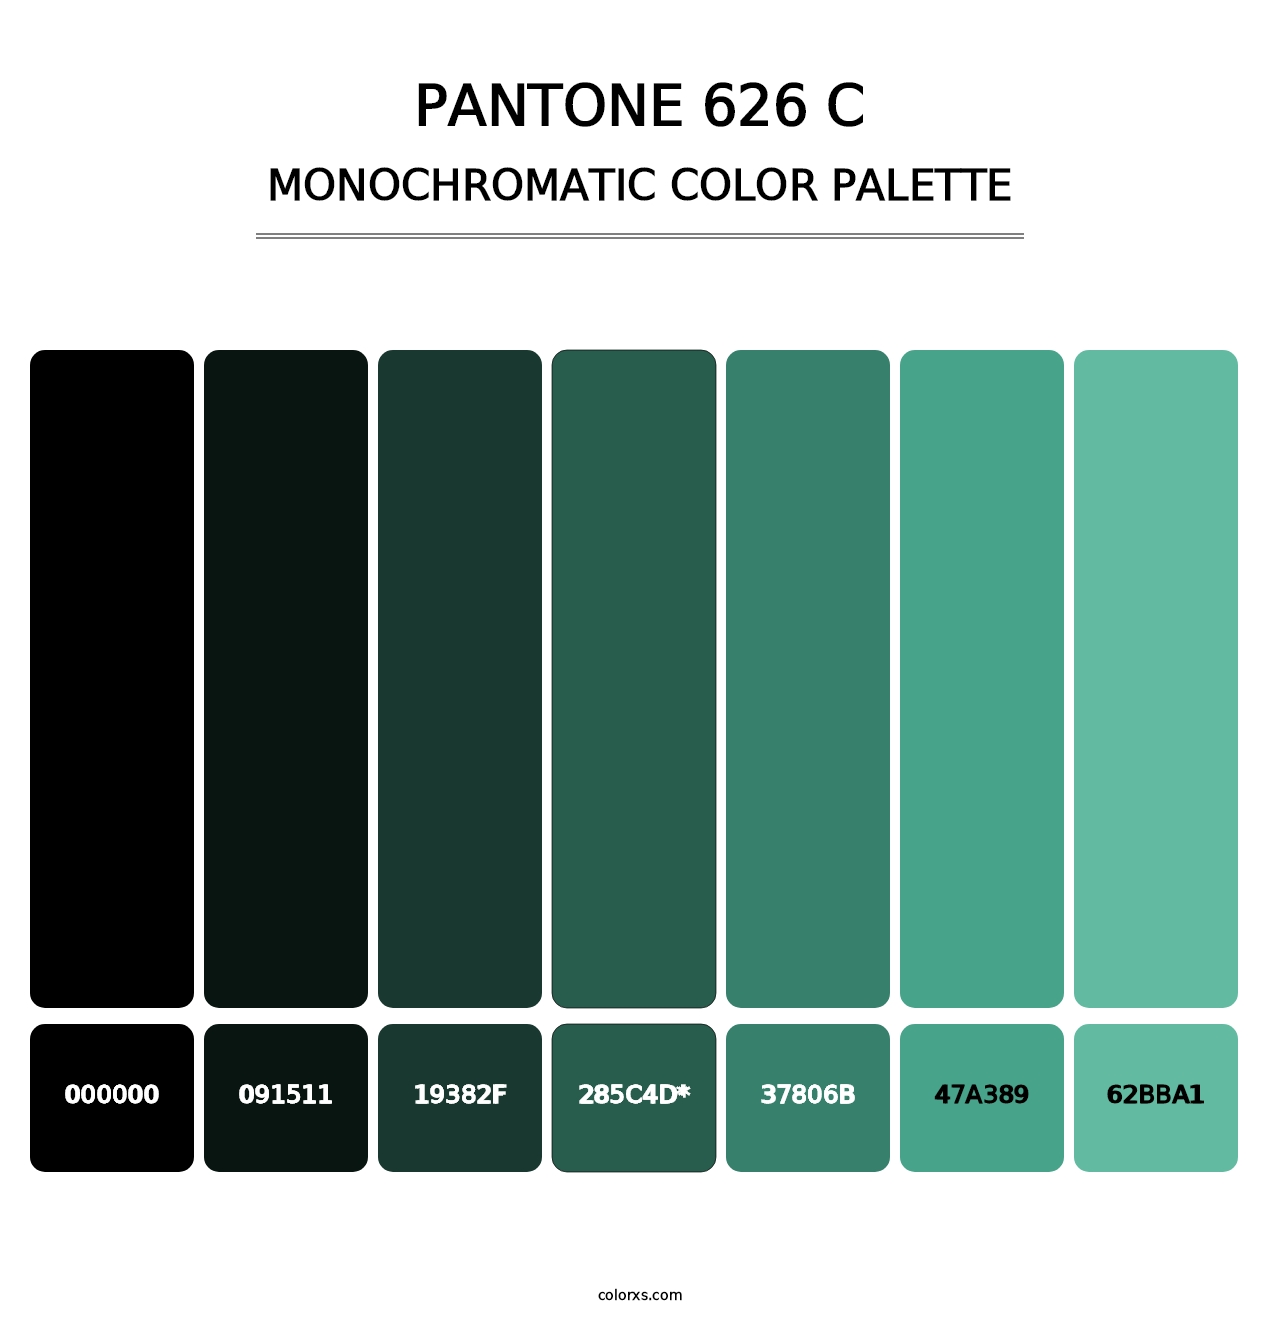 PANTONE 626 C - Monochromatic Color Palette